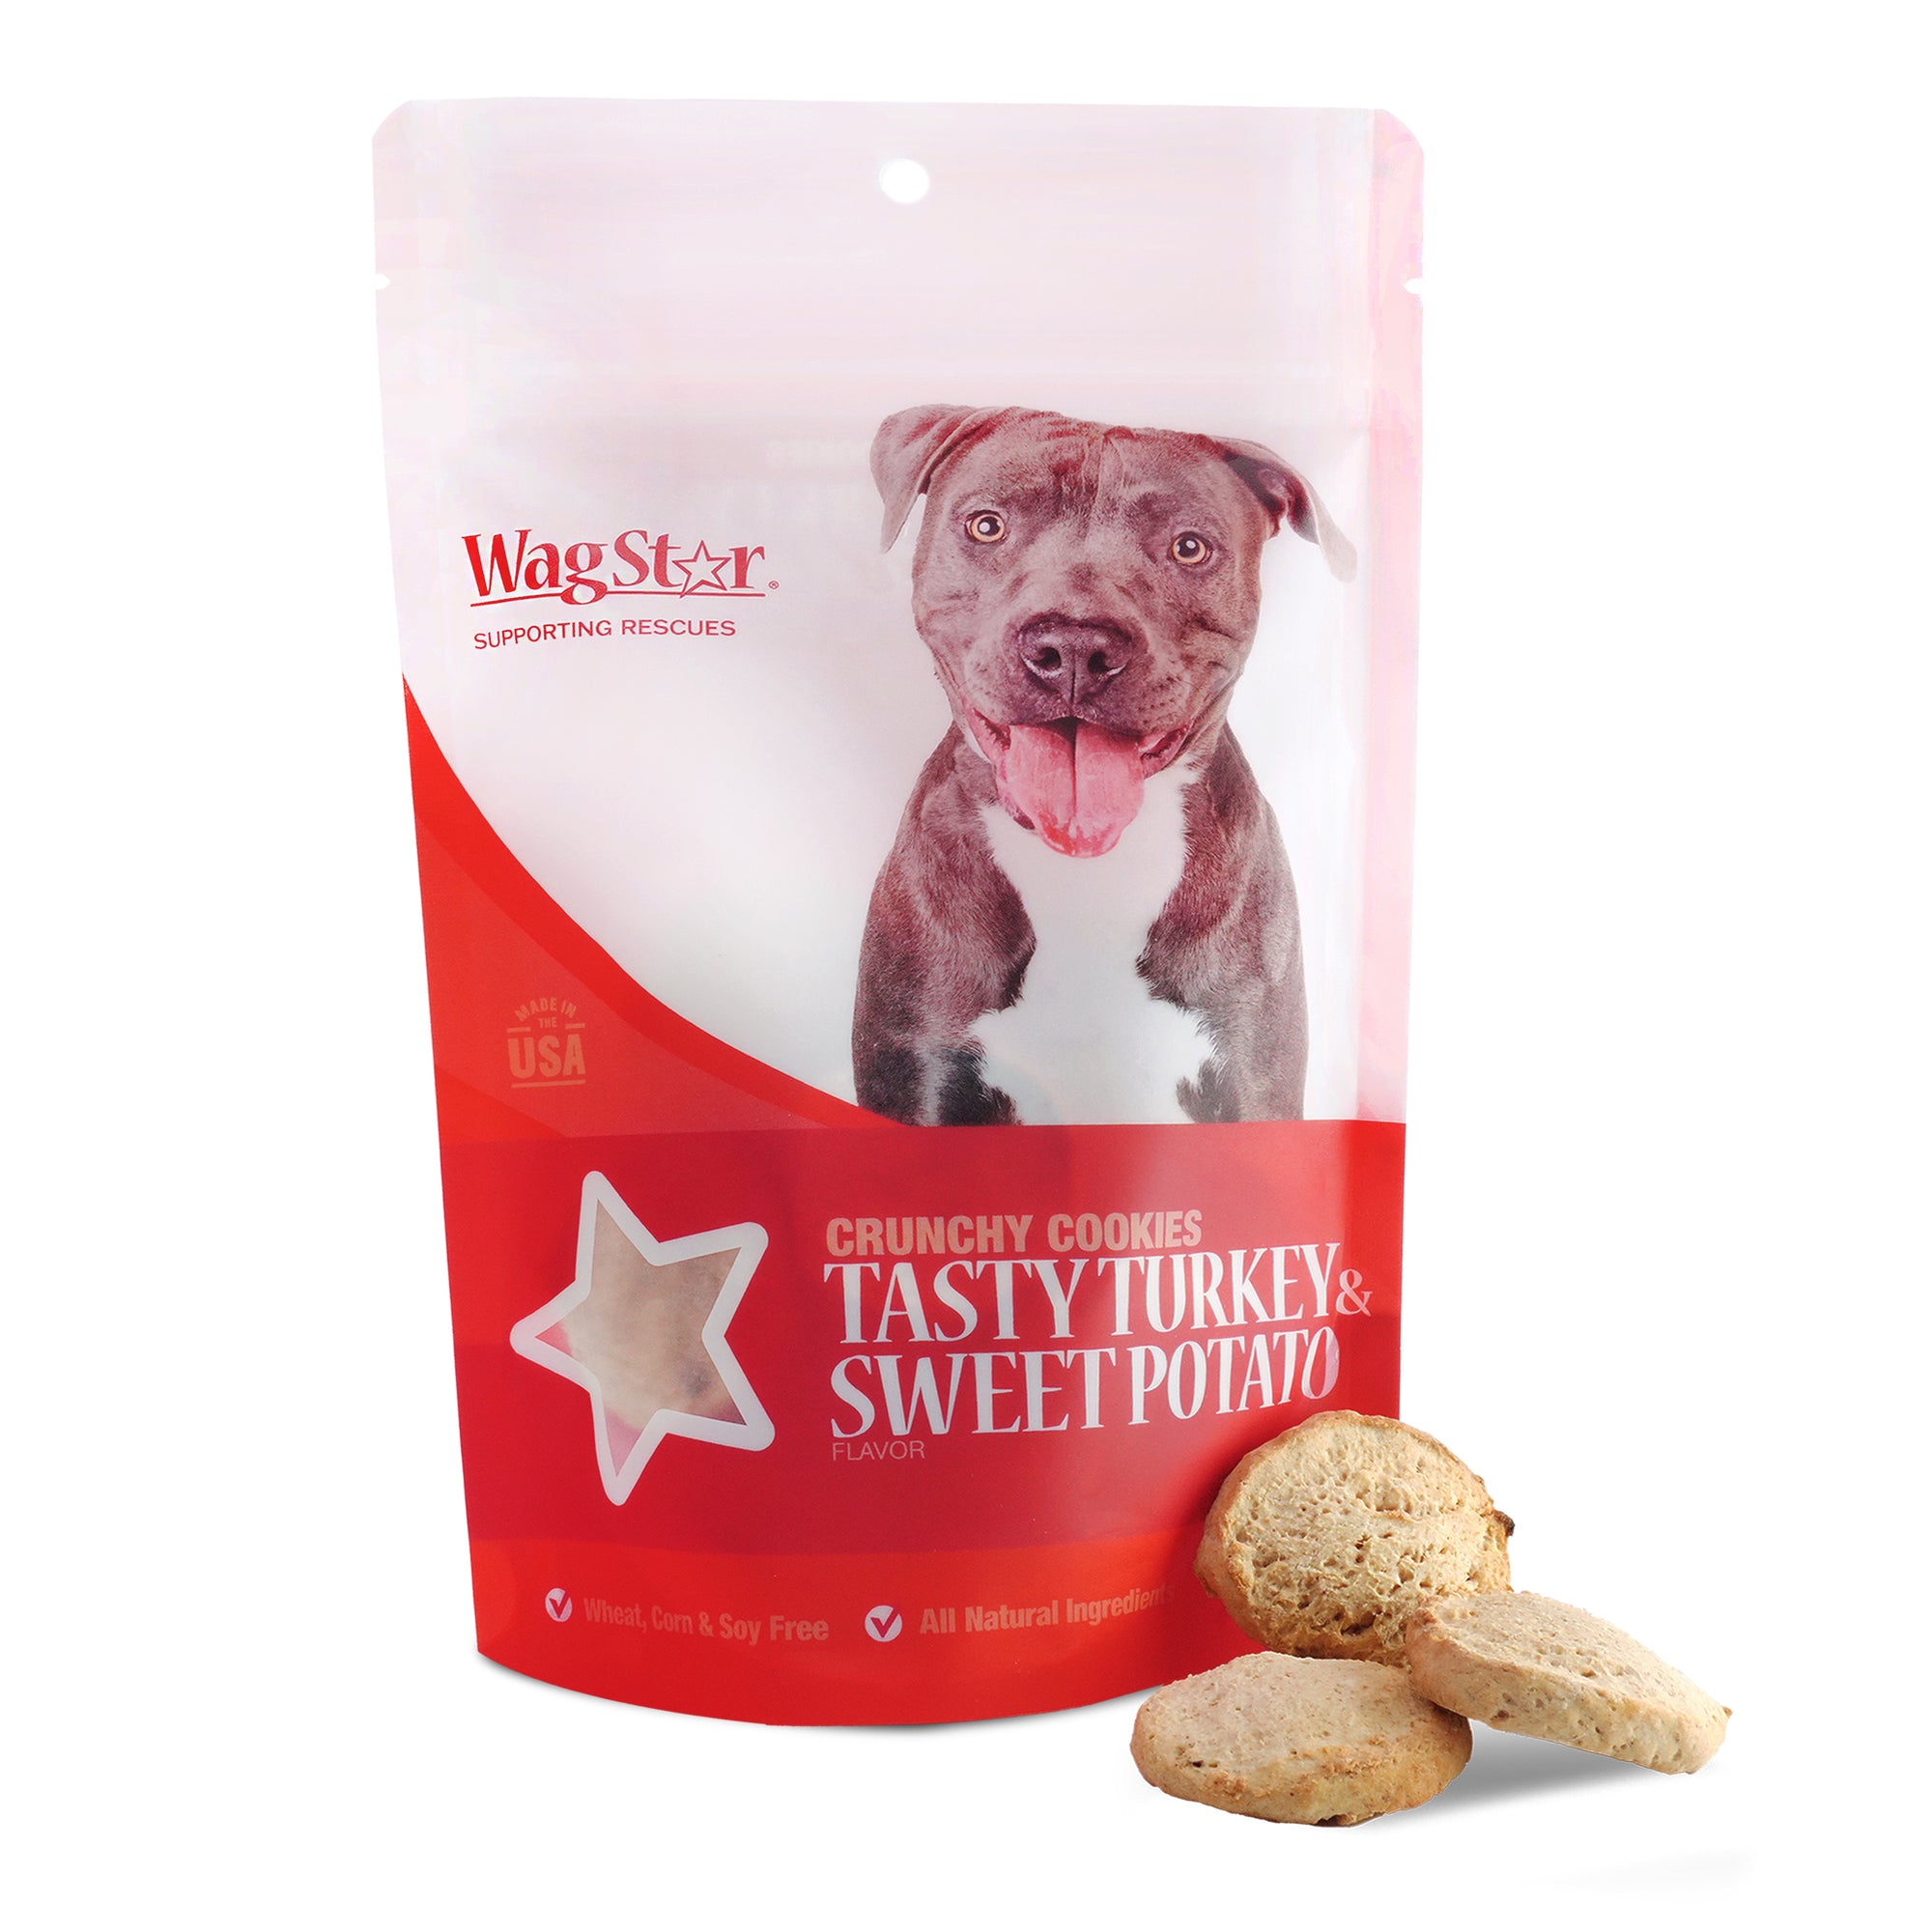 WagStar Tasty Turkey & Sweet Potato Crunchy Cookie Dog Treats